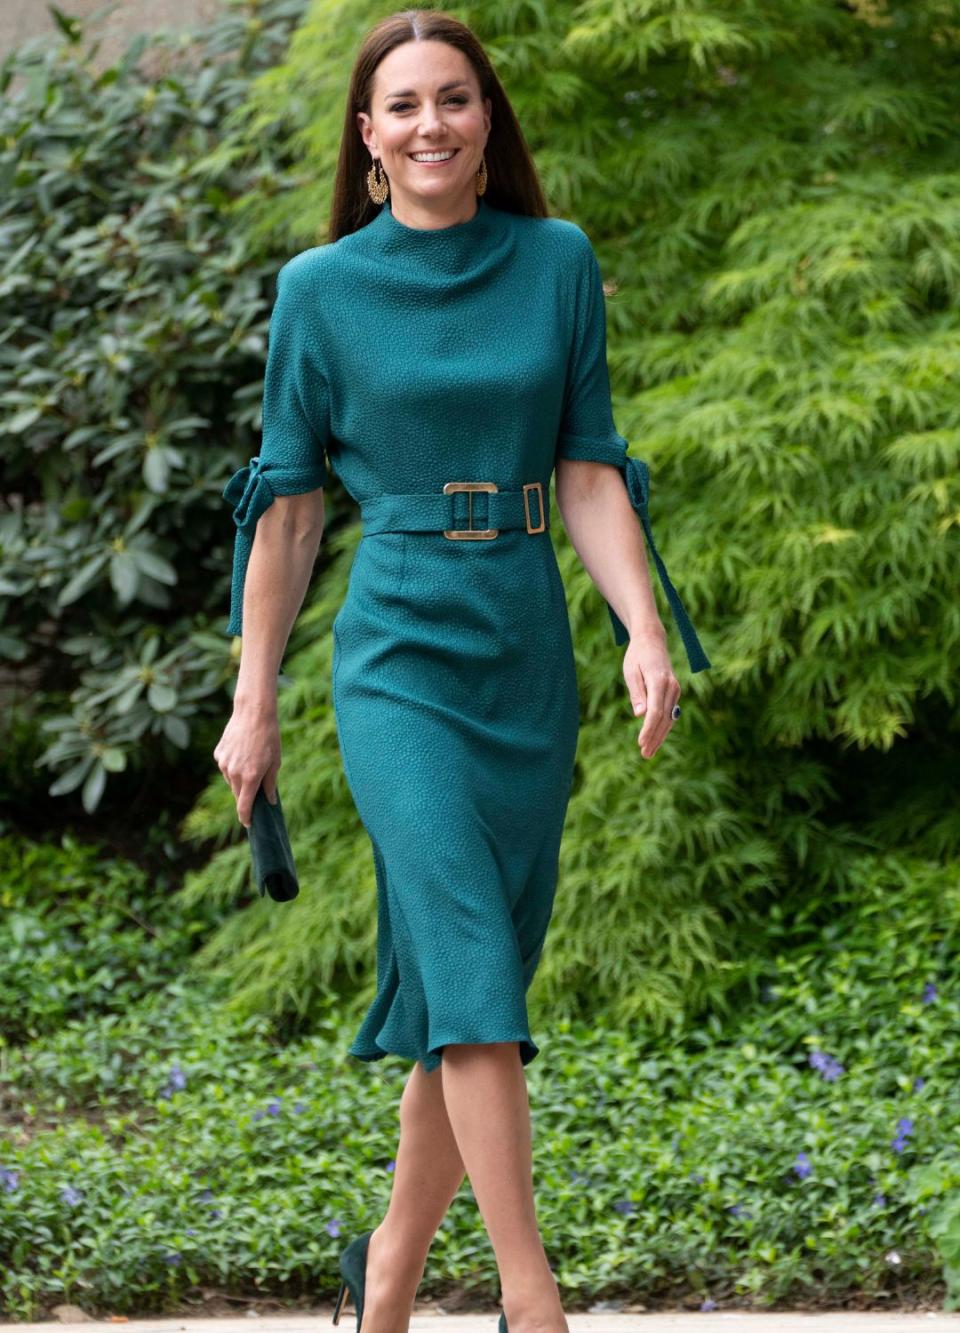 A unique turquoise dress